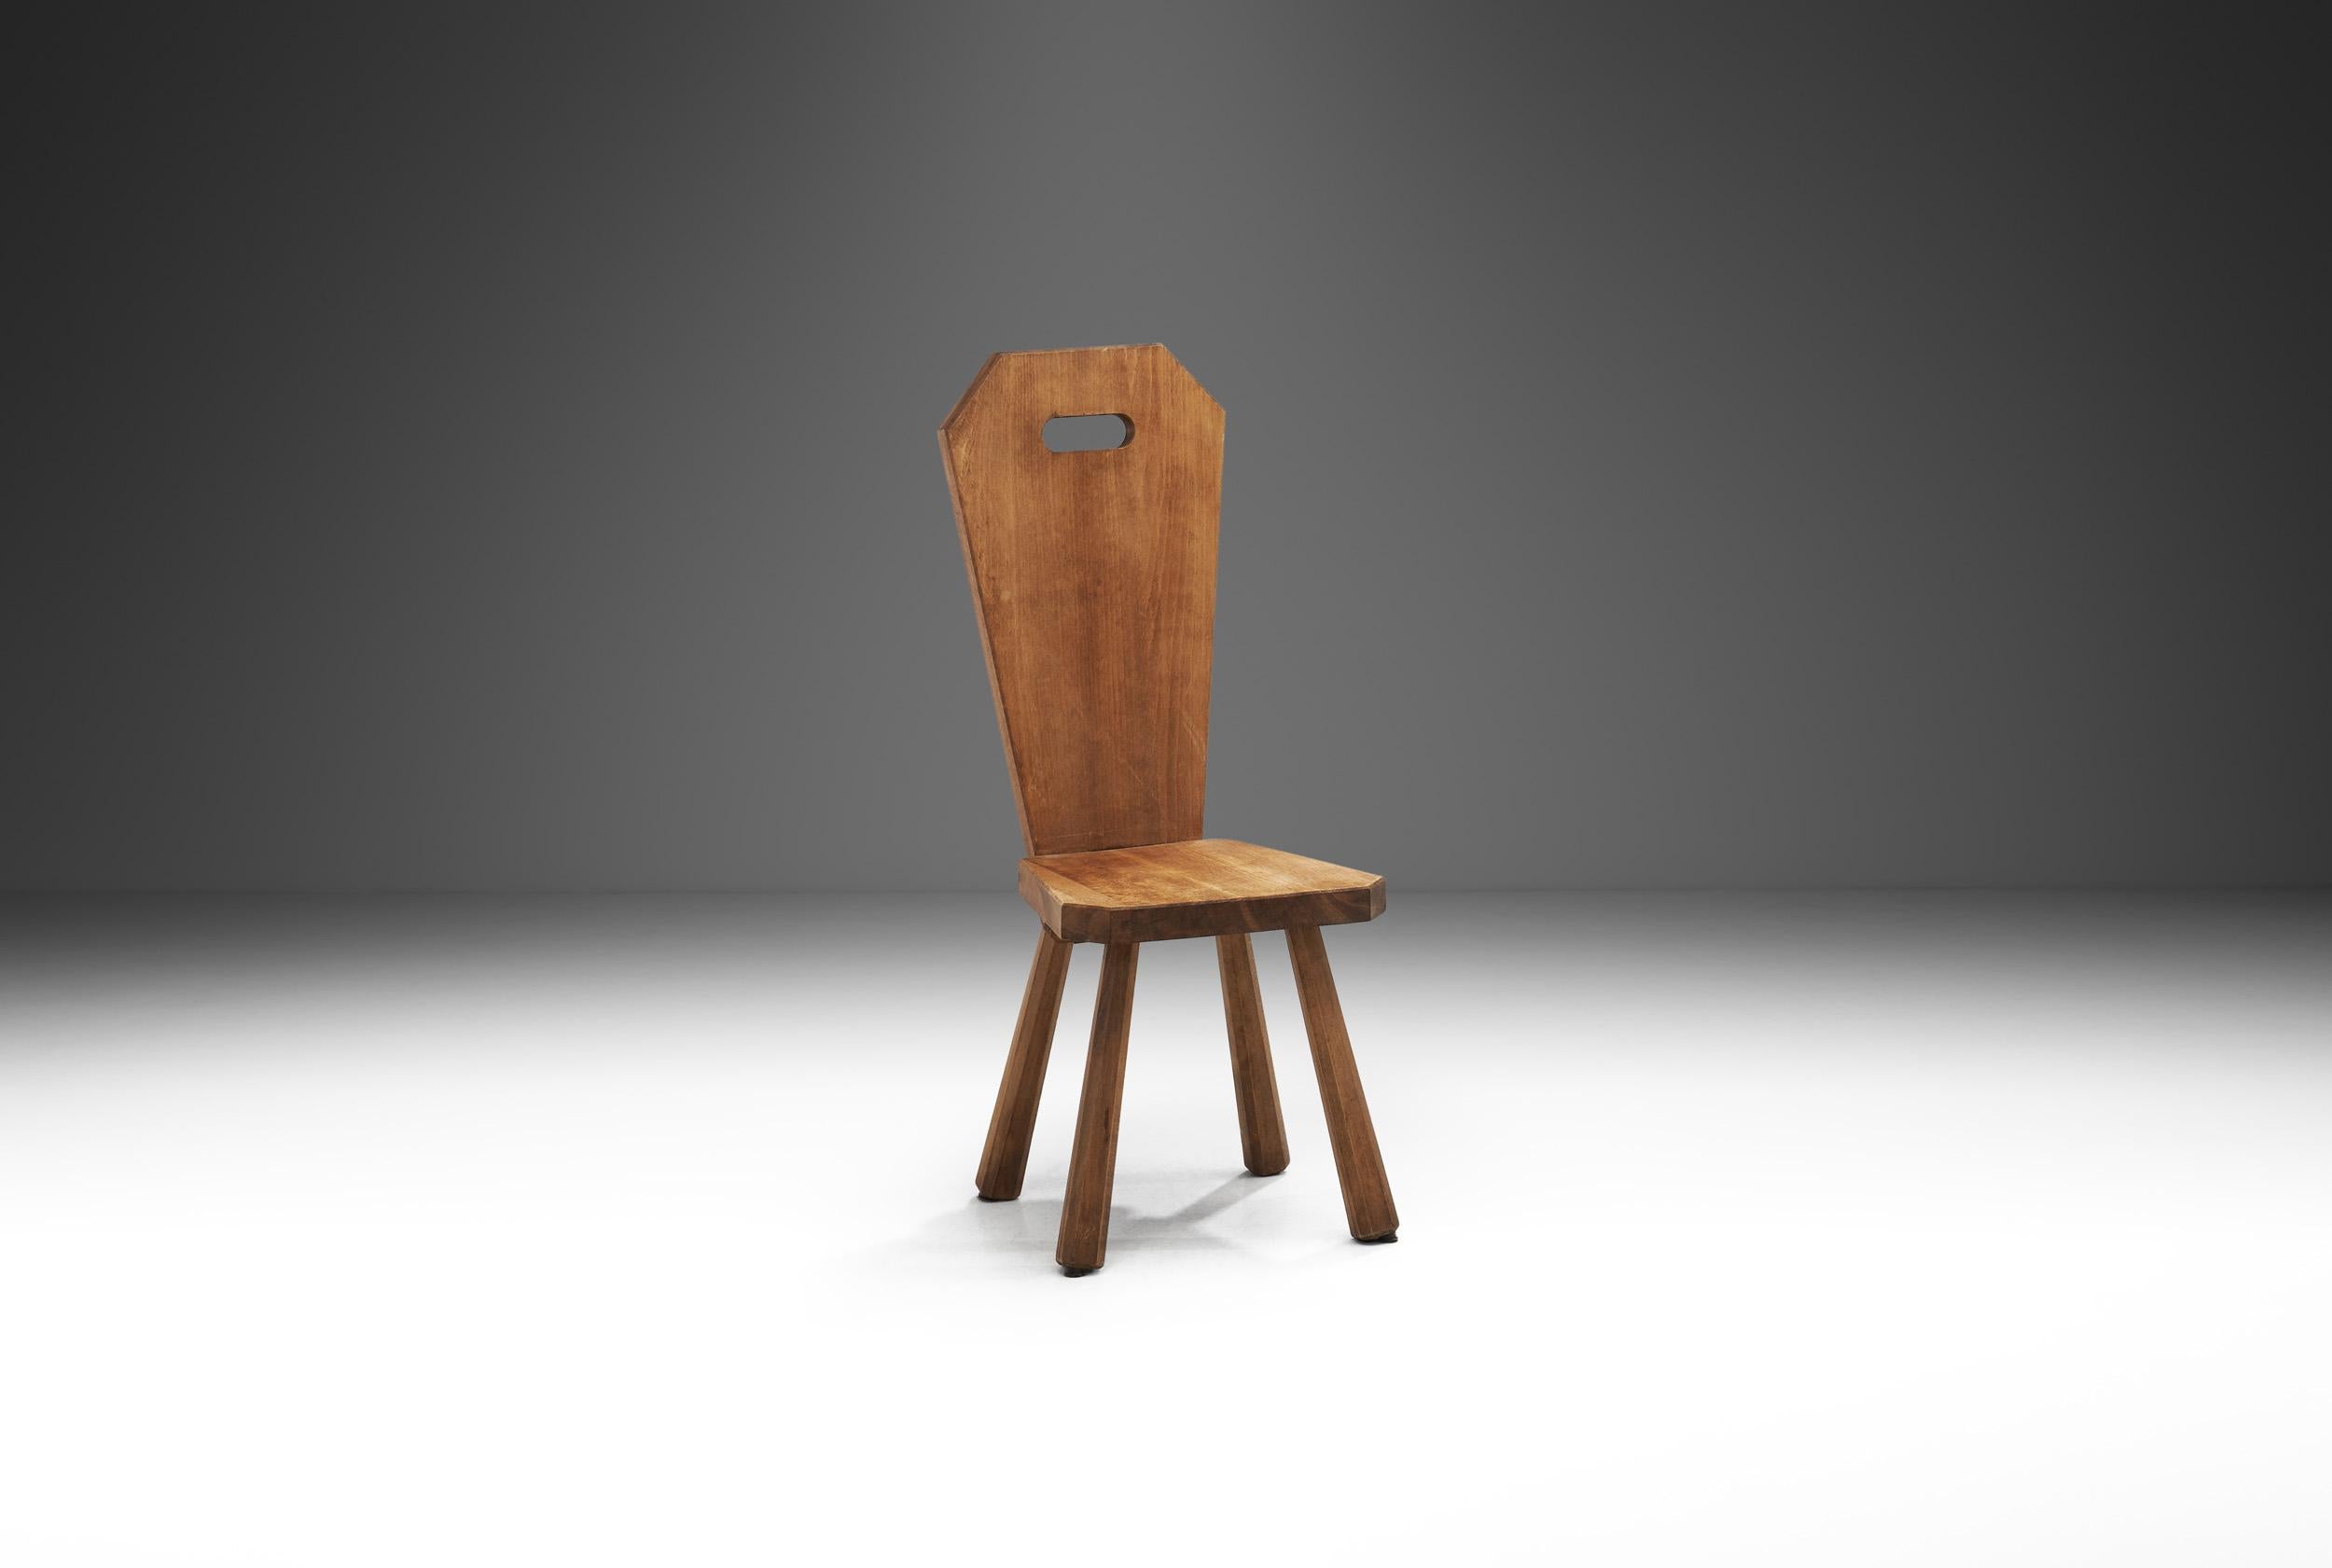 Avec une forme organique robuste et une palette de couleurs terre, cette chaise est l'incarnation du Brutalisme. Dans le domaine du mobilier et de la décoration, le mouvement brutaliste était sombre, donnant de l'importance à des formes organiques